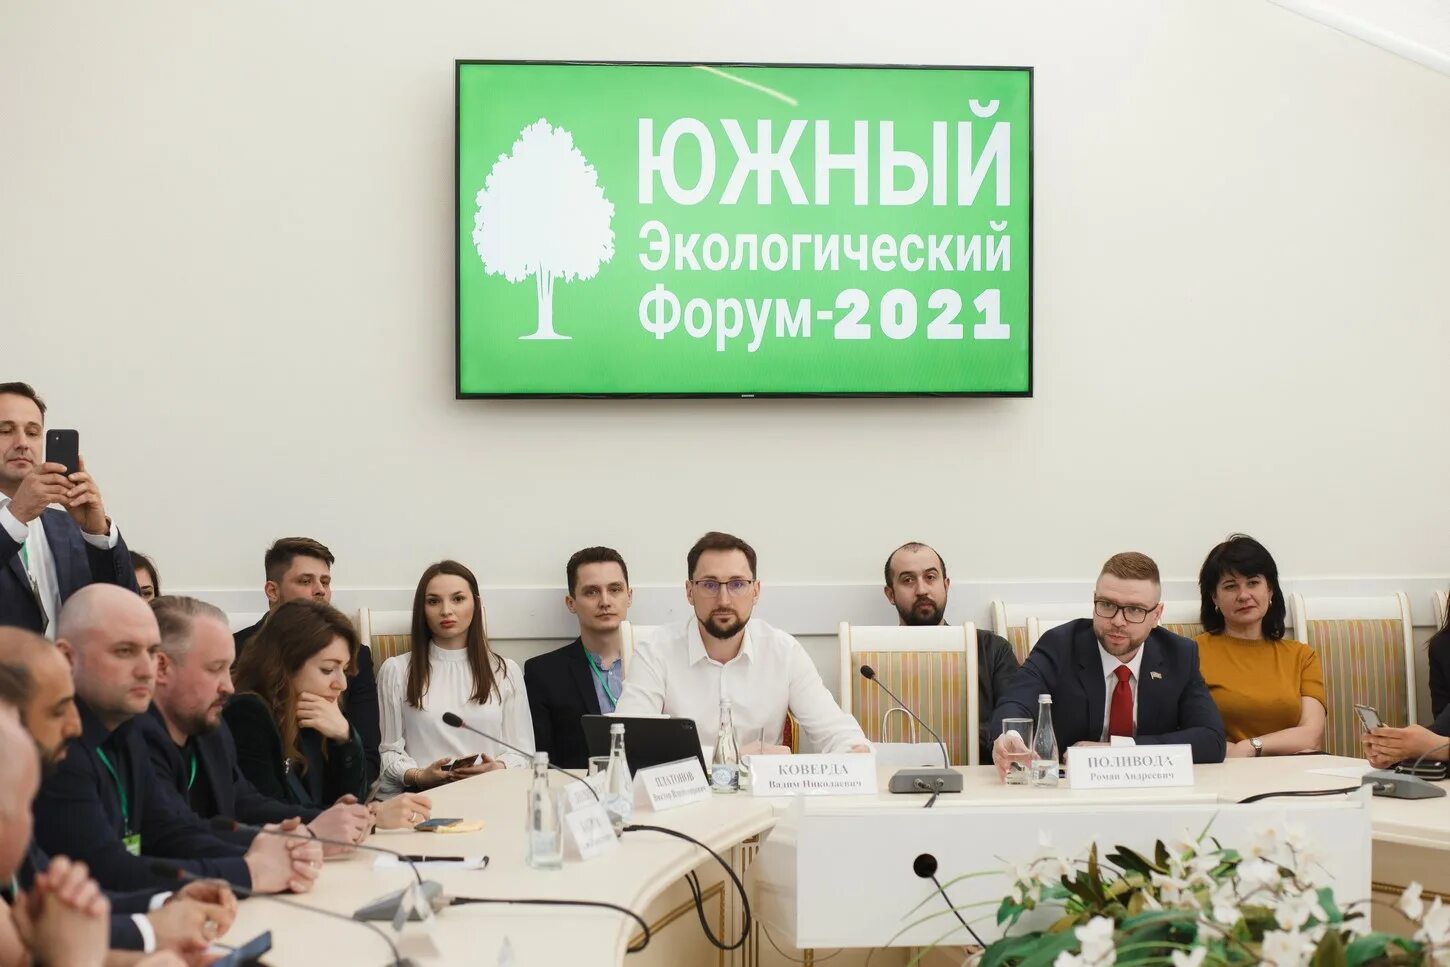 Экологический форум. Экологический форум 2021. Экологический форум в Москве. Форум 2021. Forum 2021